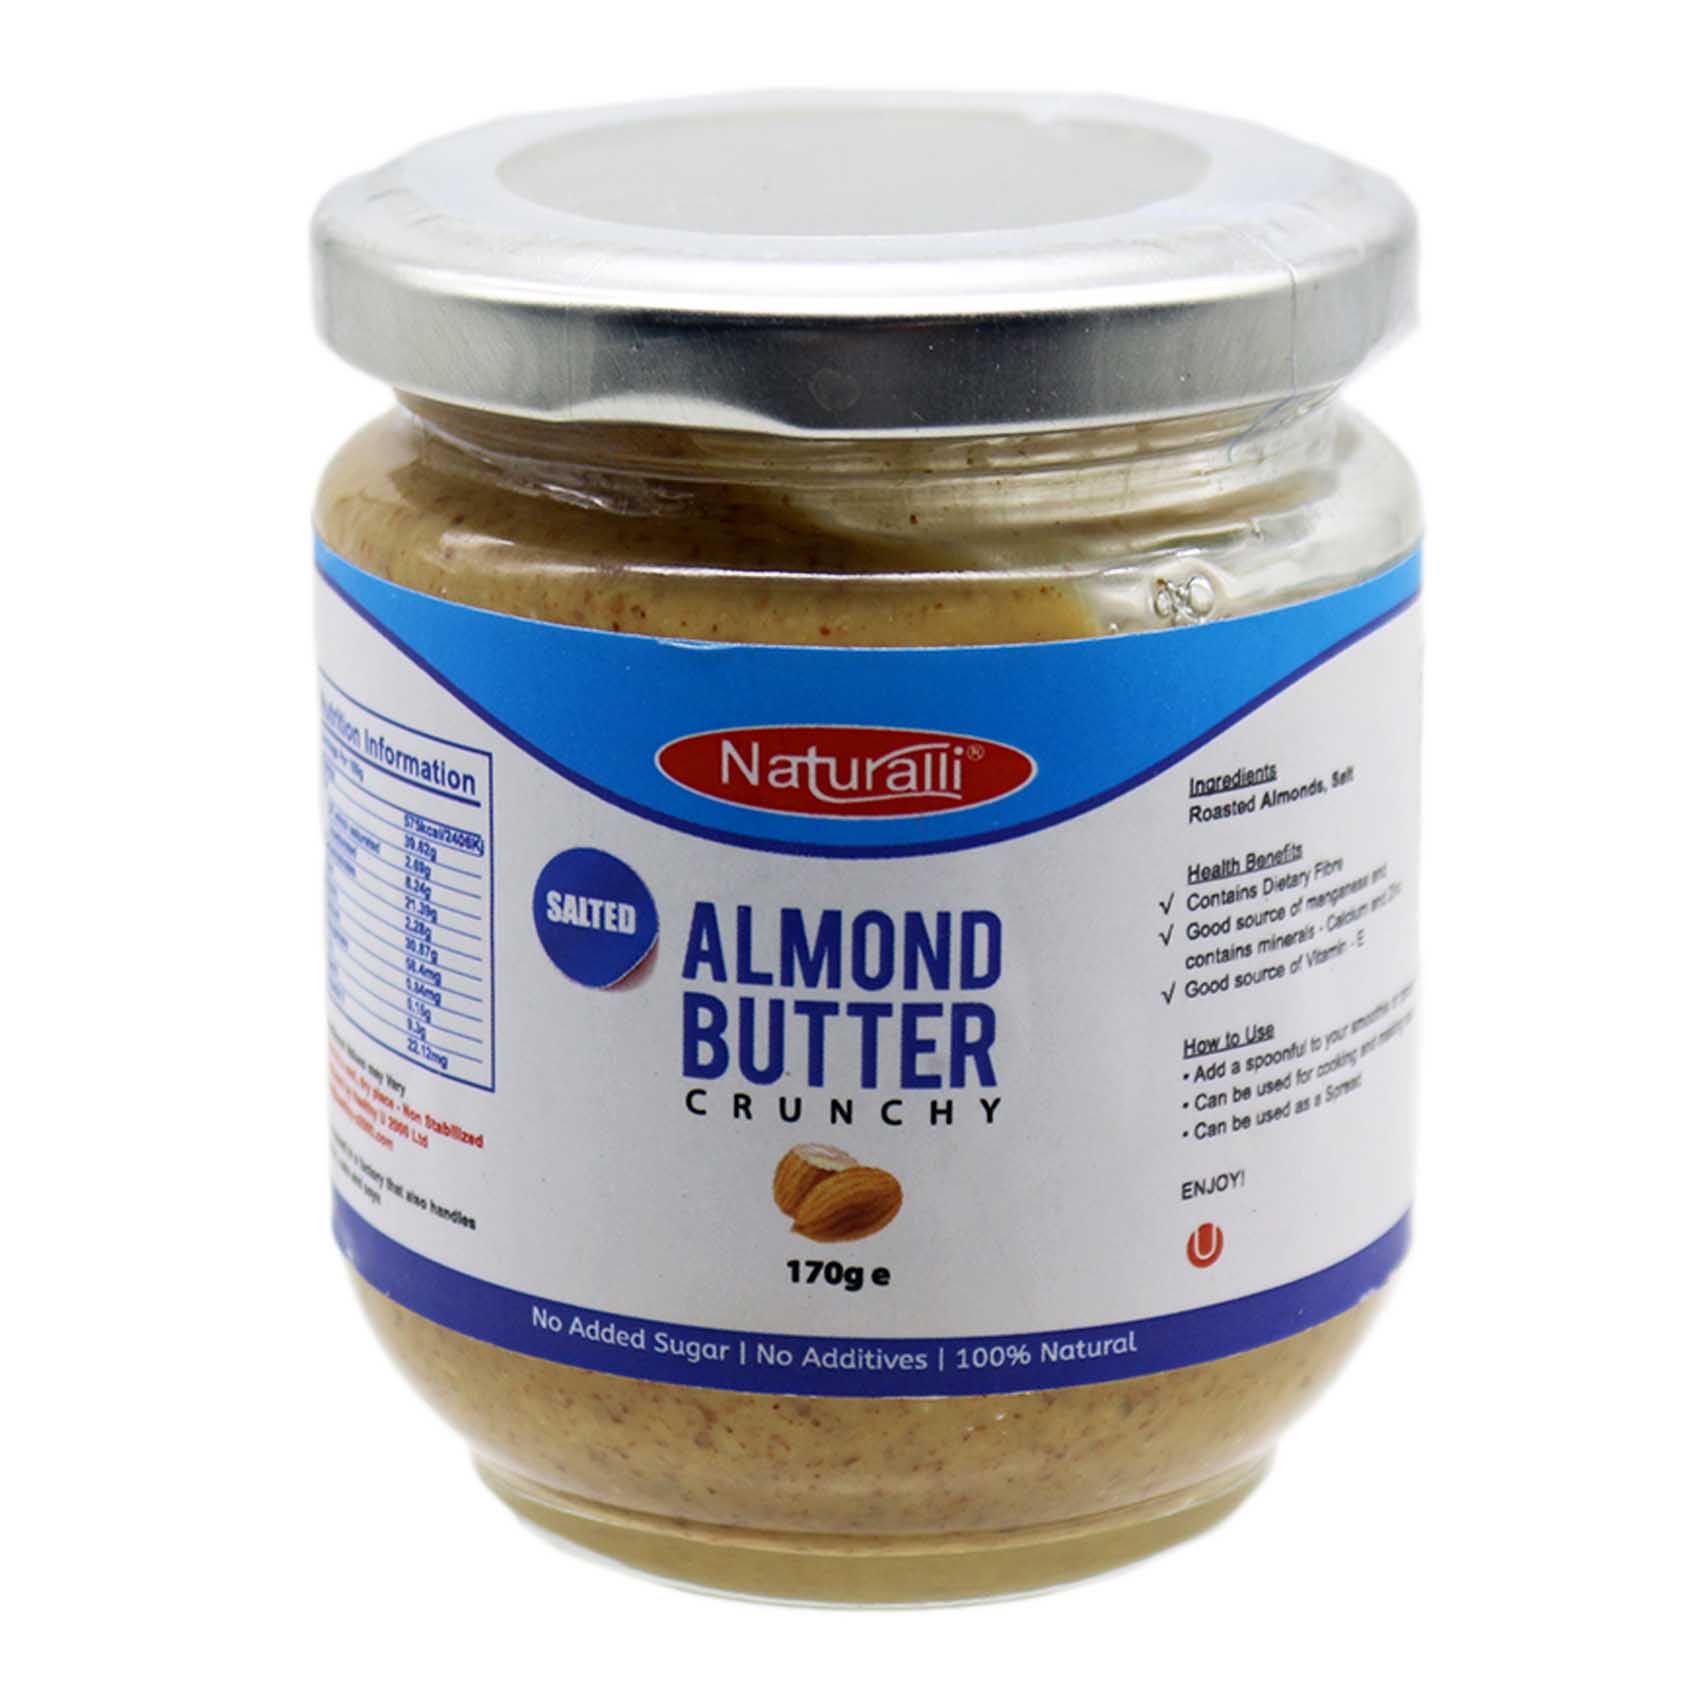 Naturalli Unsalted Almond Butter 170g